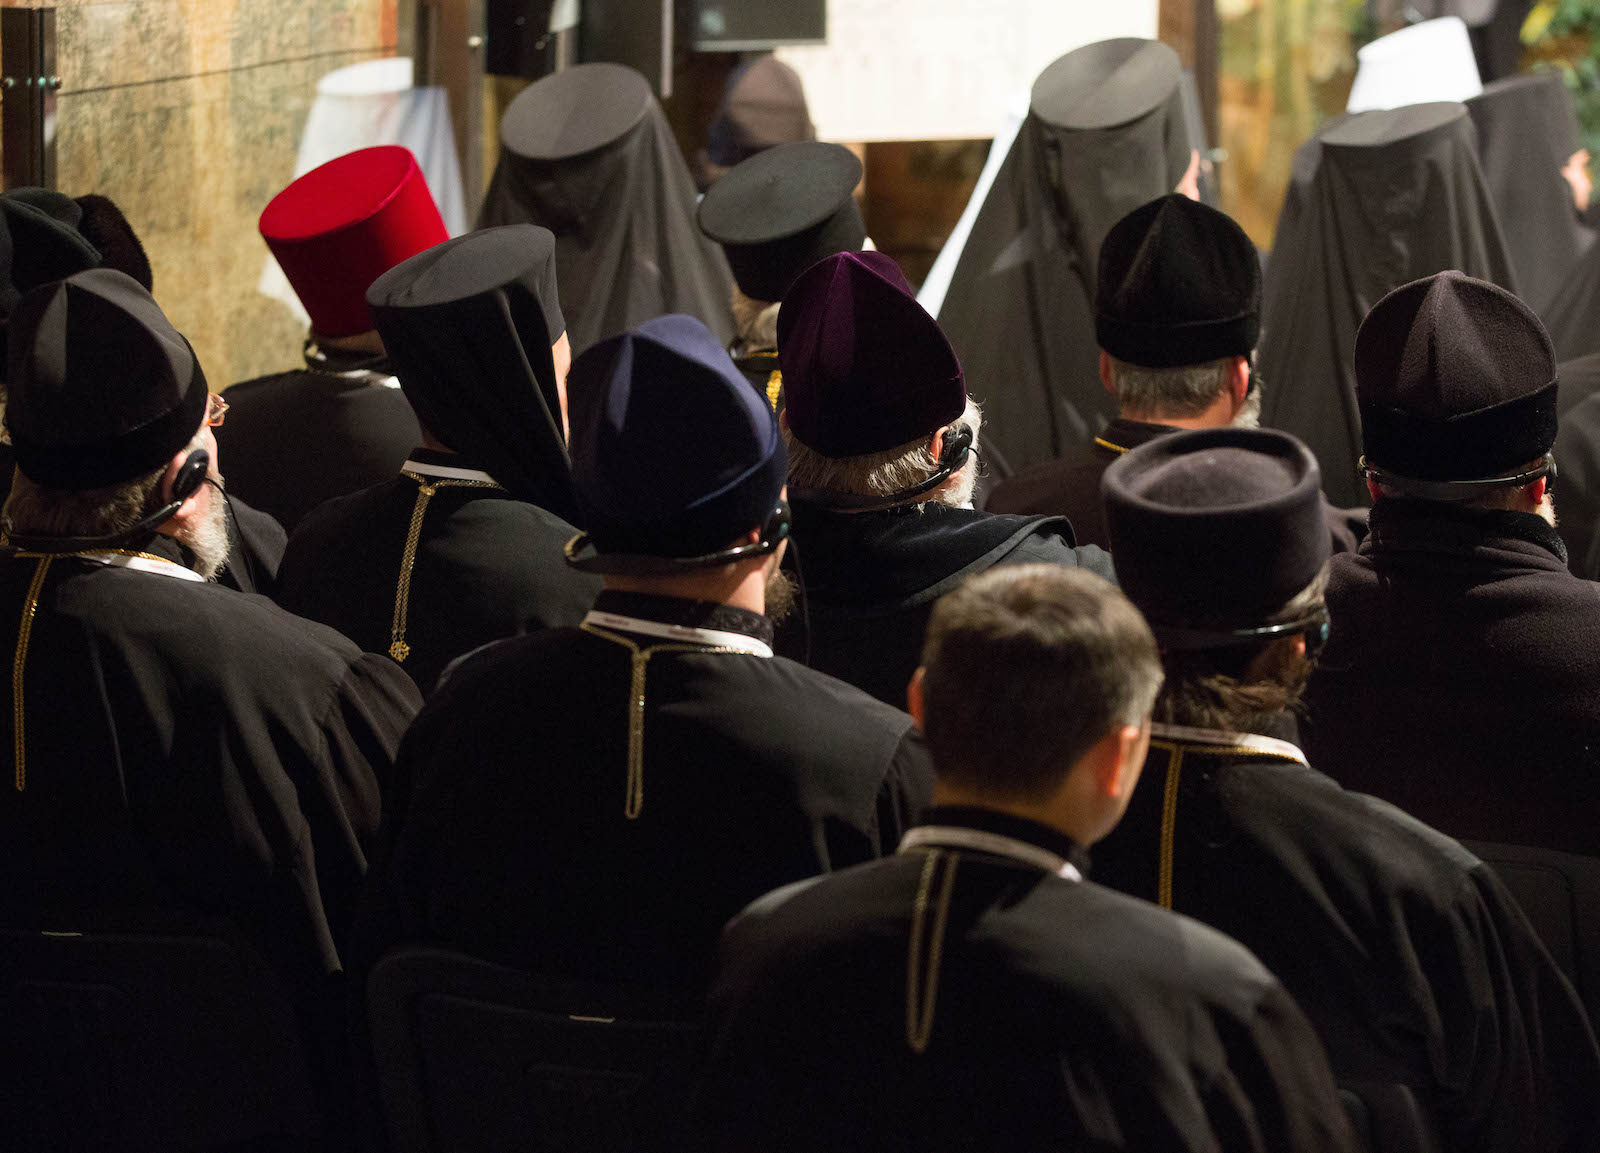 В вопросе объединения всех православных церквей Собор, мягко говоря, прорывом не стал